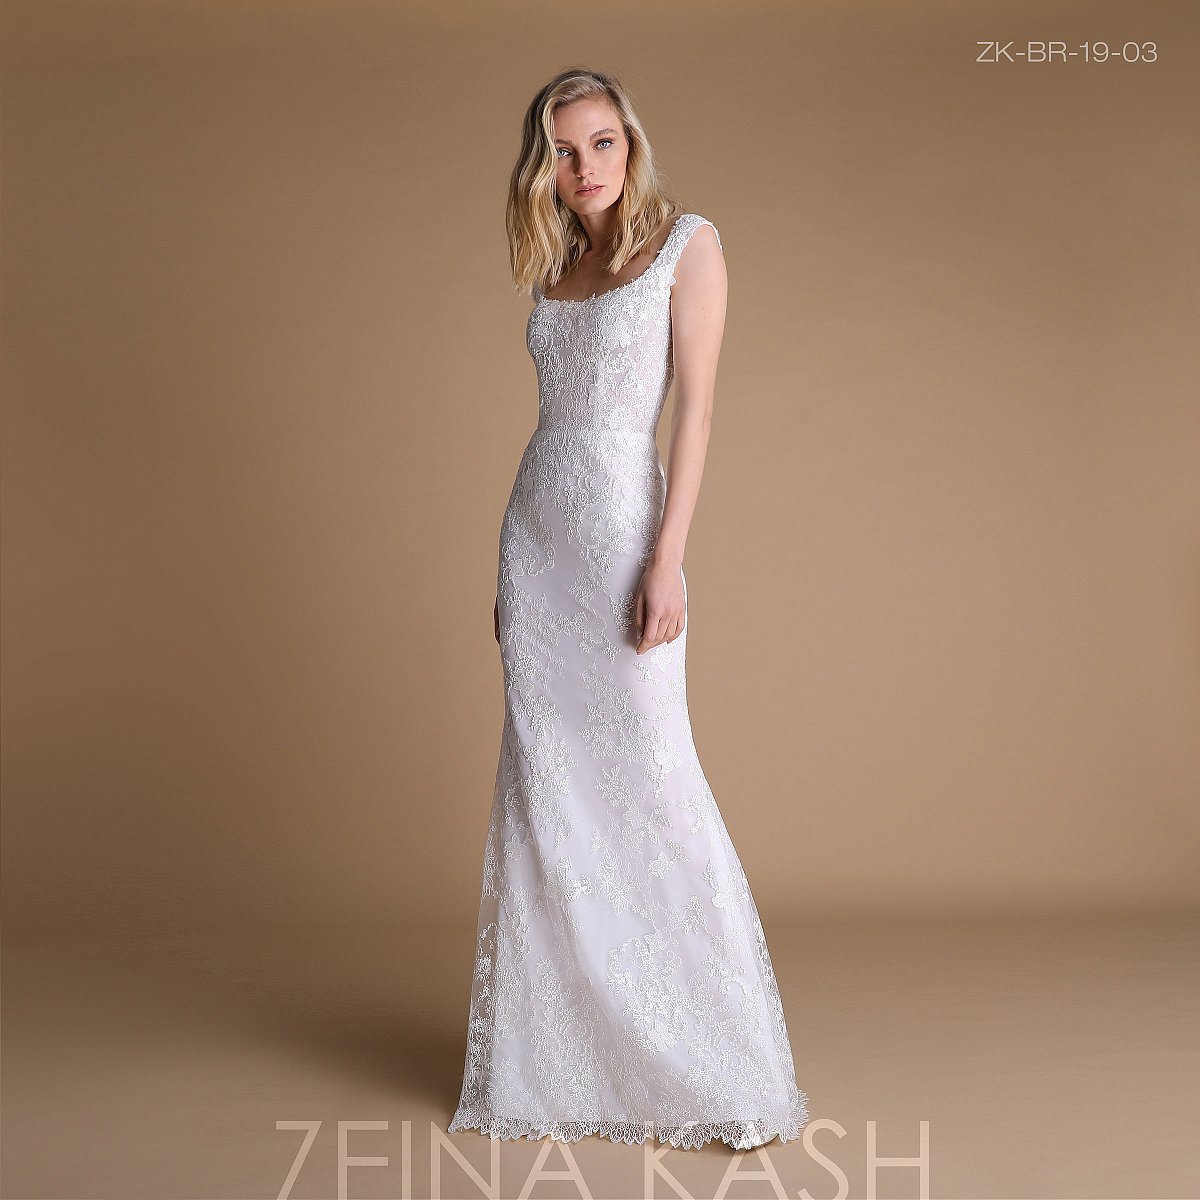 Zeina Kash Coleção 2019 - Nupcial - 1